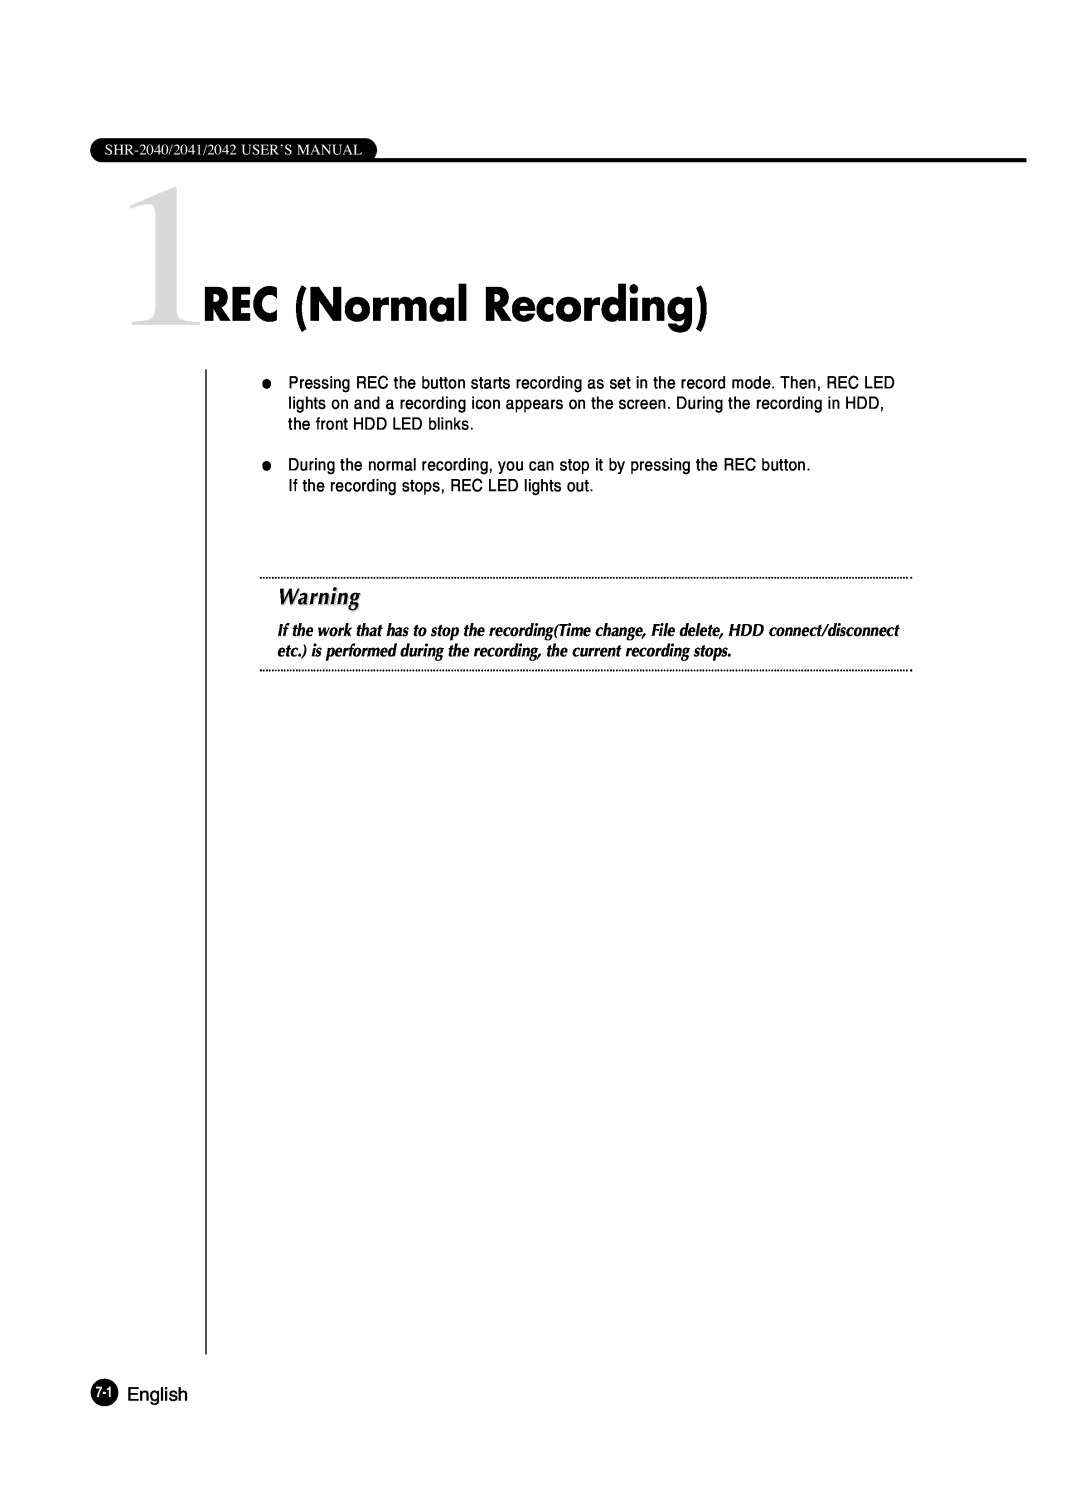 Samsung SHR-2042P250, SHR-2040P250 manual 1REC Normal Recording, English 